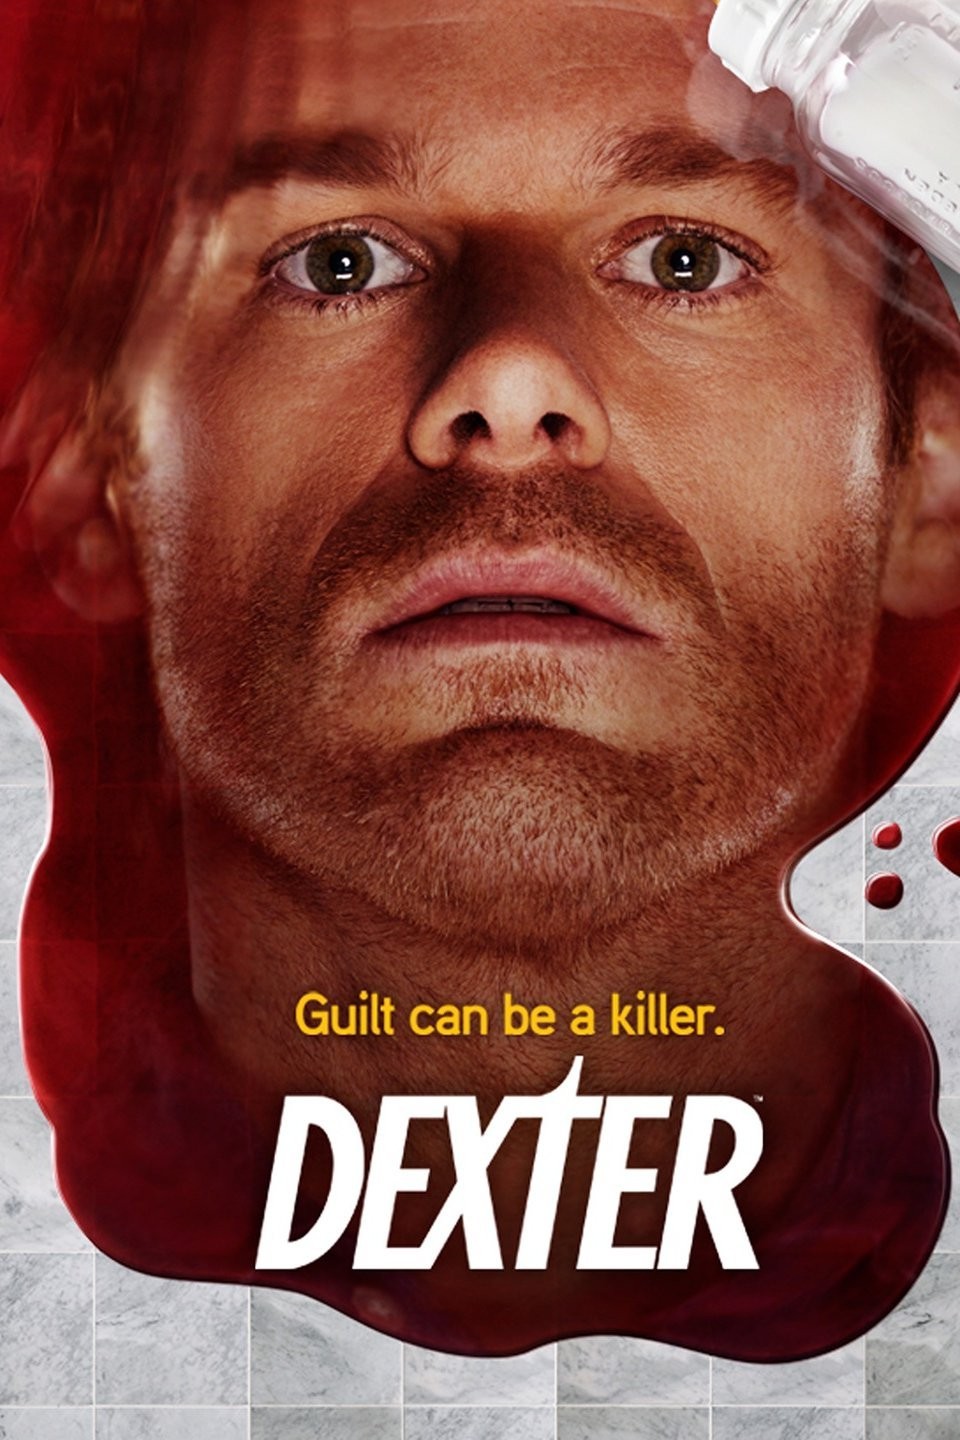 Série de TV Dexter ganha game gratuito no Facebook